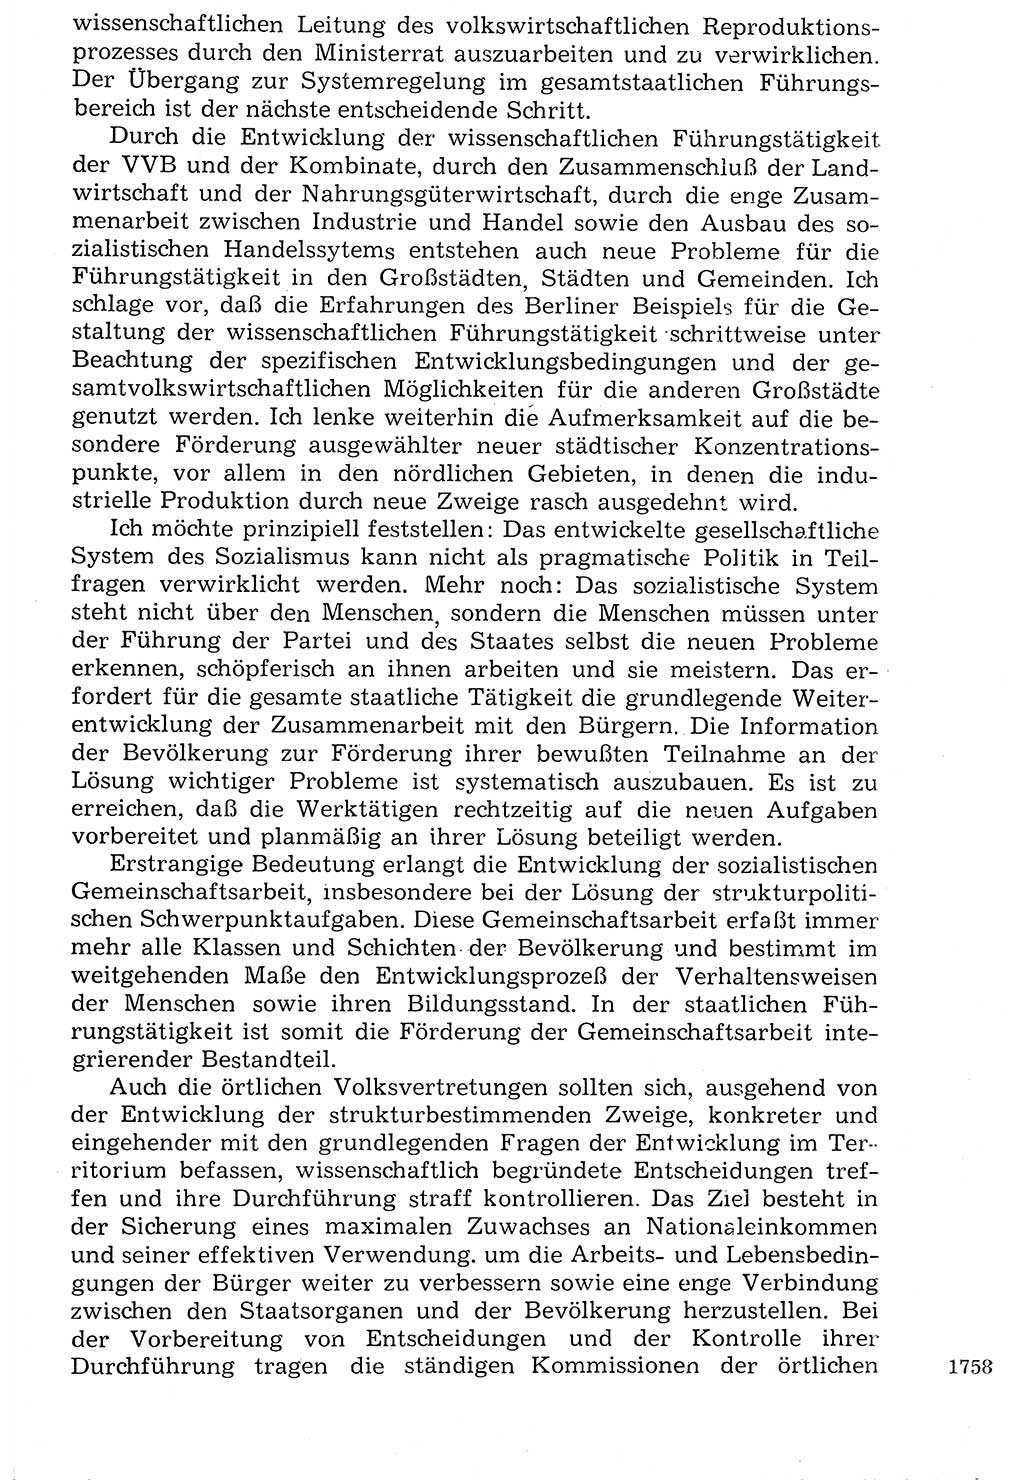 Staat und Recht (StuR), 17. Jahrgang [Deutsche Demokratische Republik (DDR)] 1968, Seite 1758 (StuR DDR 1968, S. 1758)